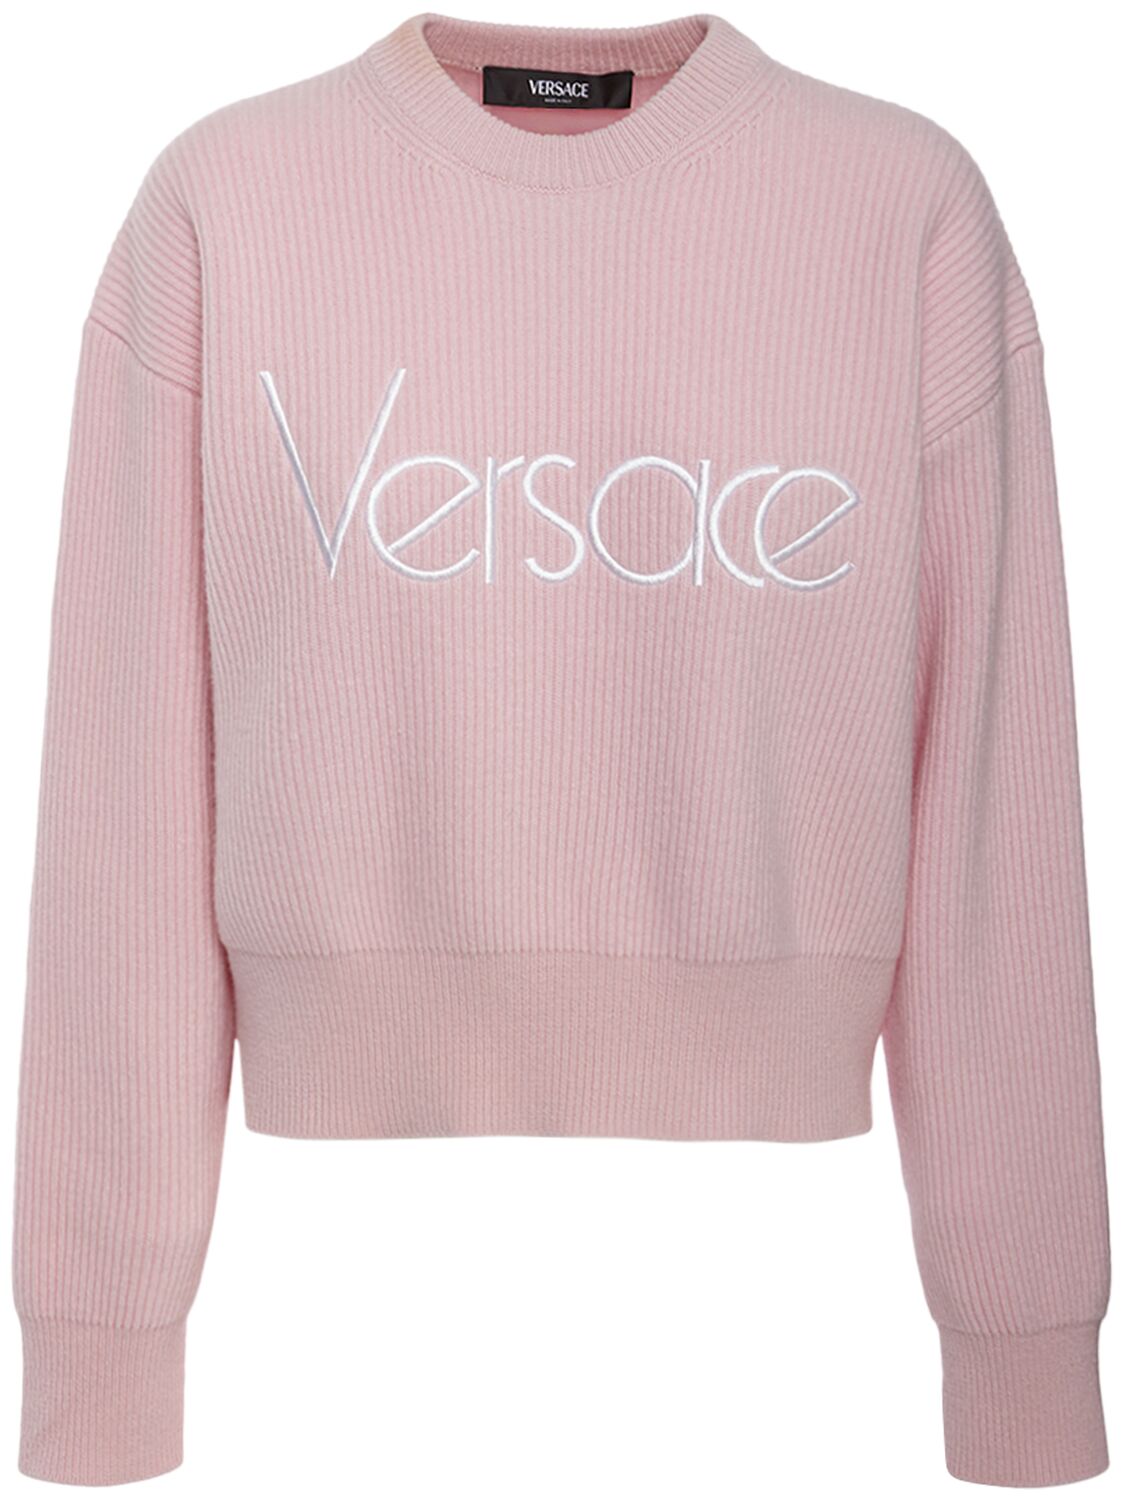 Versace Logo罗纹针织圆领毛衣 In Pink